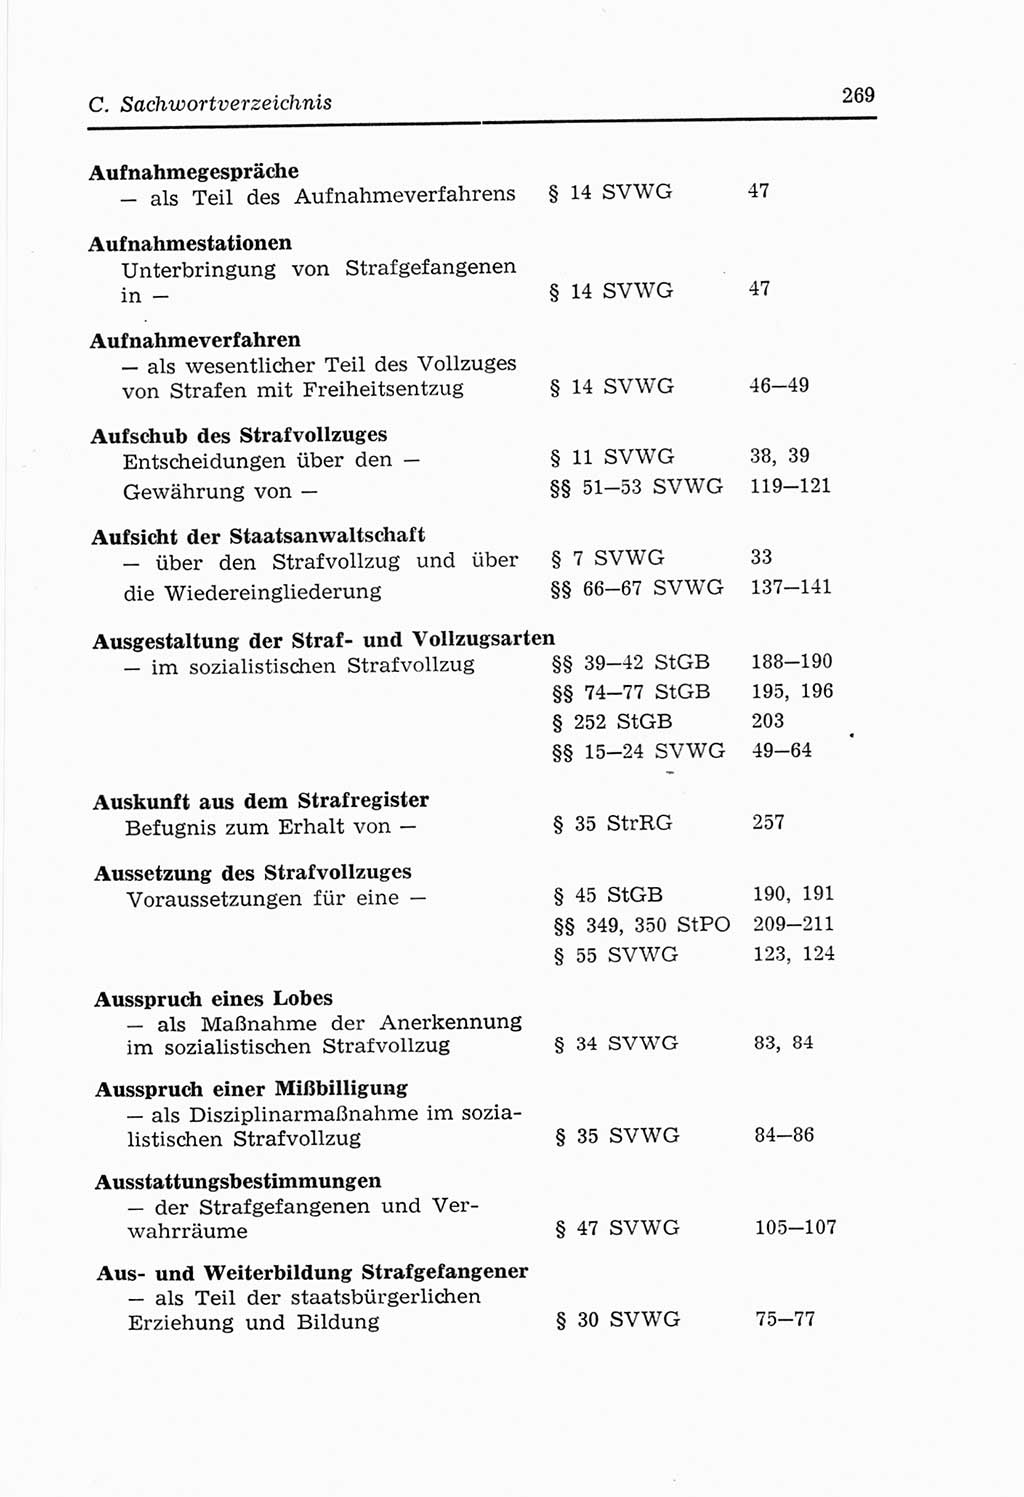 Strafvollzugs- und Wiedereingliederungsgesetz (SVWG) der Deutschen Demokratischen Republik (DDR) 1968, Seite 269 (SVWG DDR 1968, S. 269)